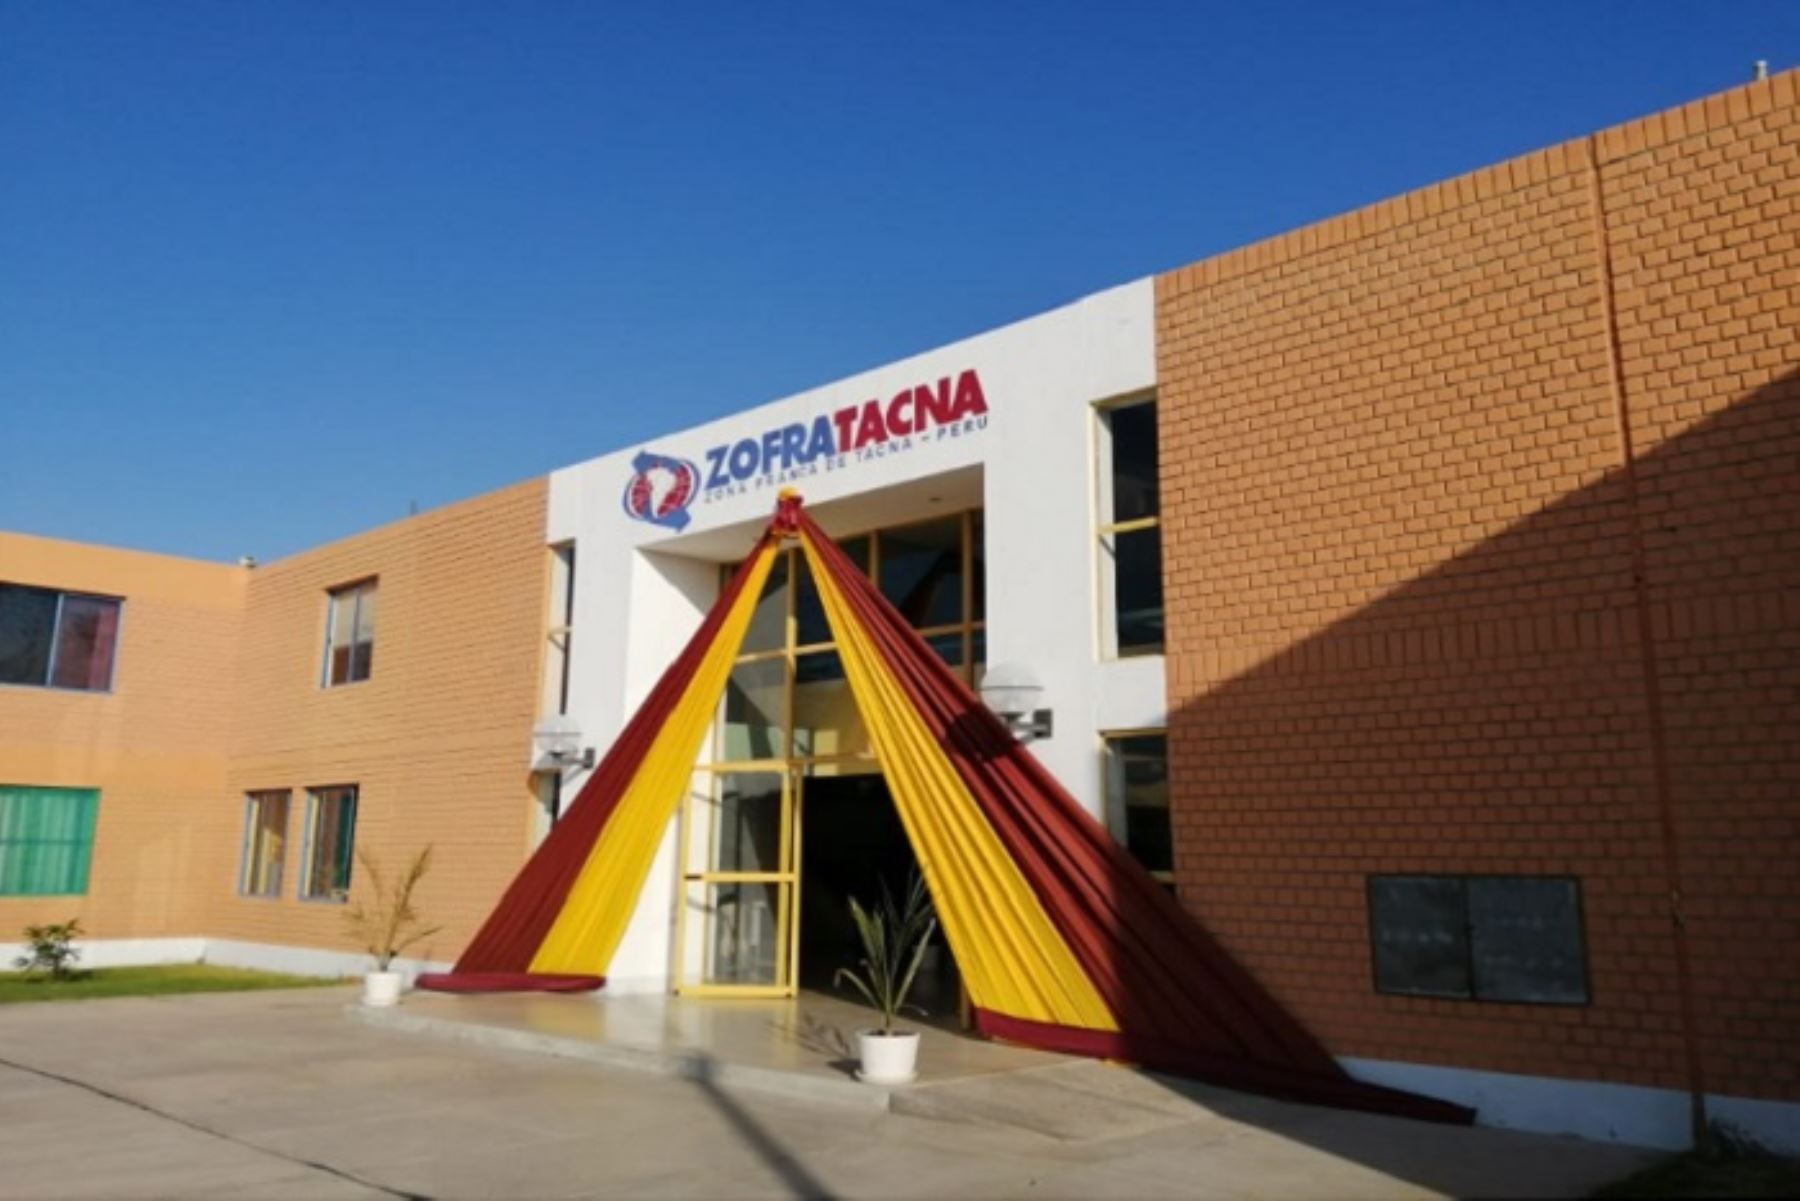 La subasta pública se realizó el 30 de octubre último y los nuevos usuarios de Zofratacna se adjudicaron un área aproximada de 8,000 metros cuadrados.